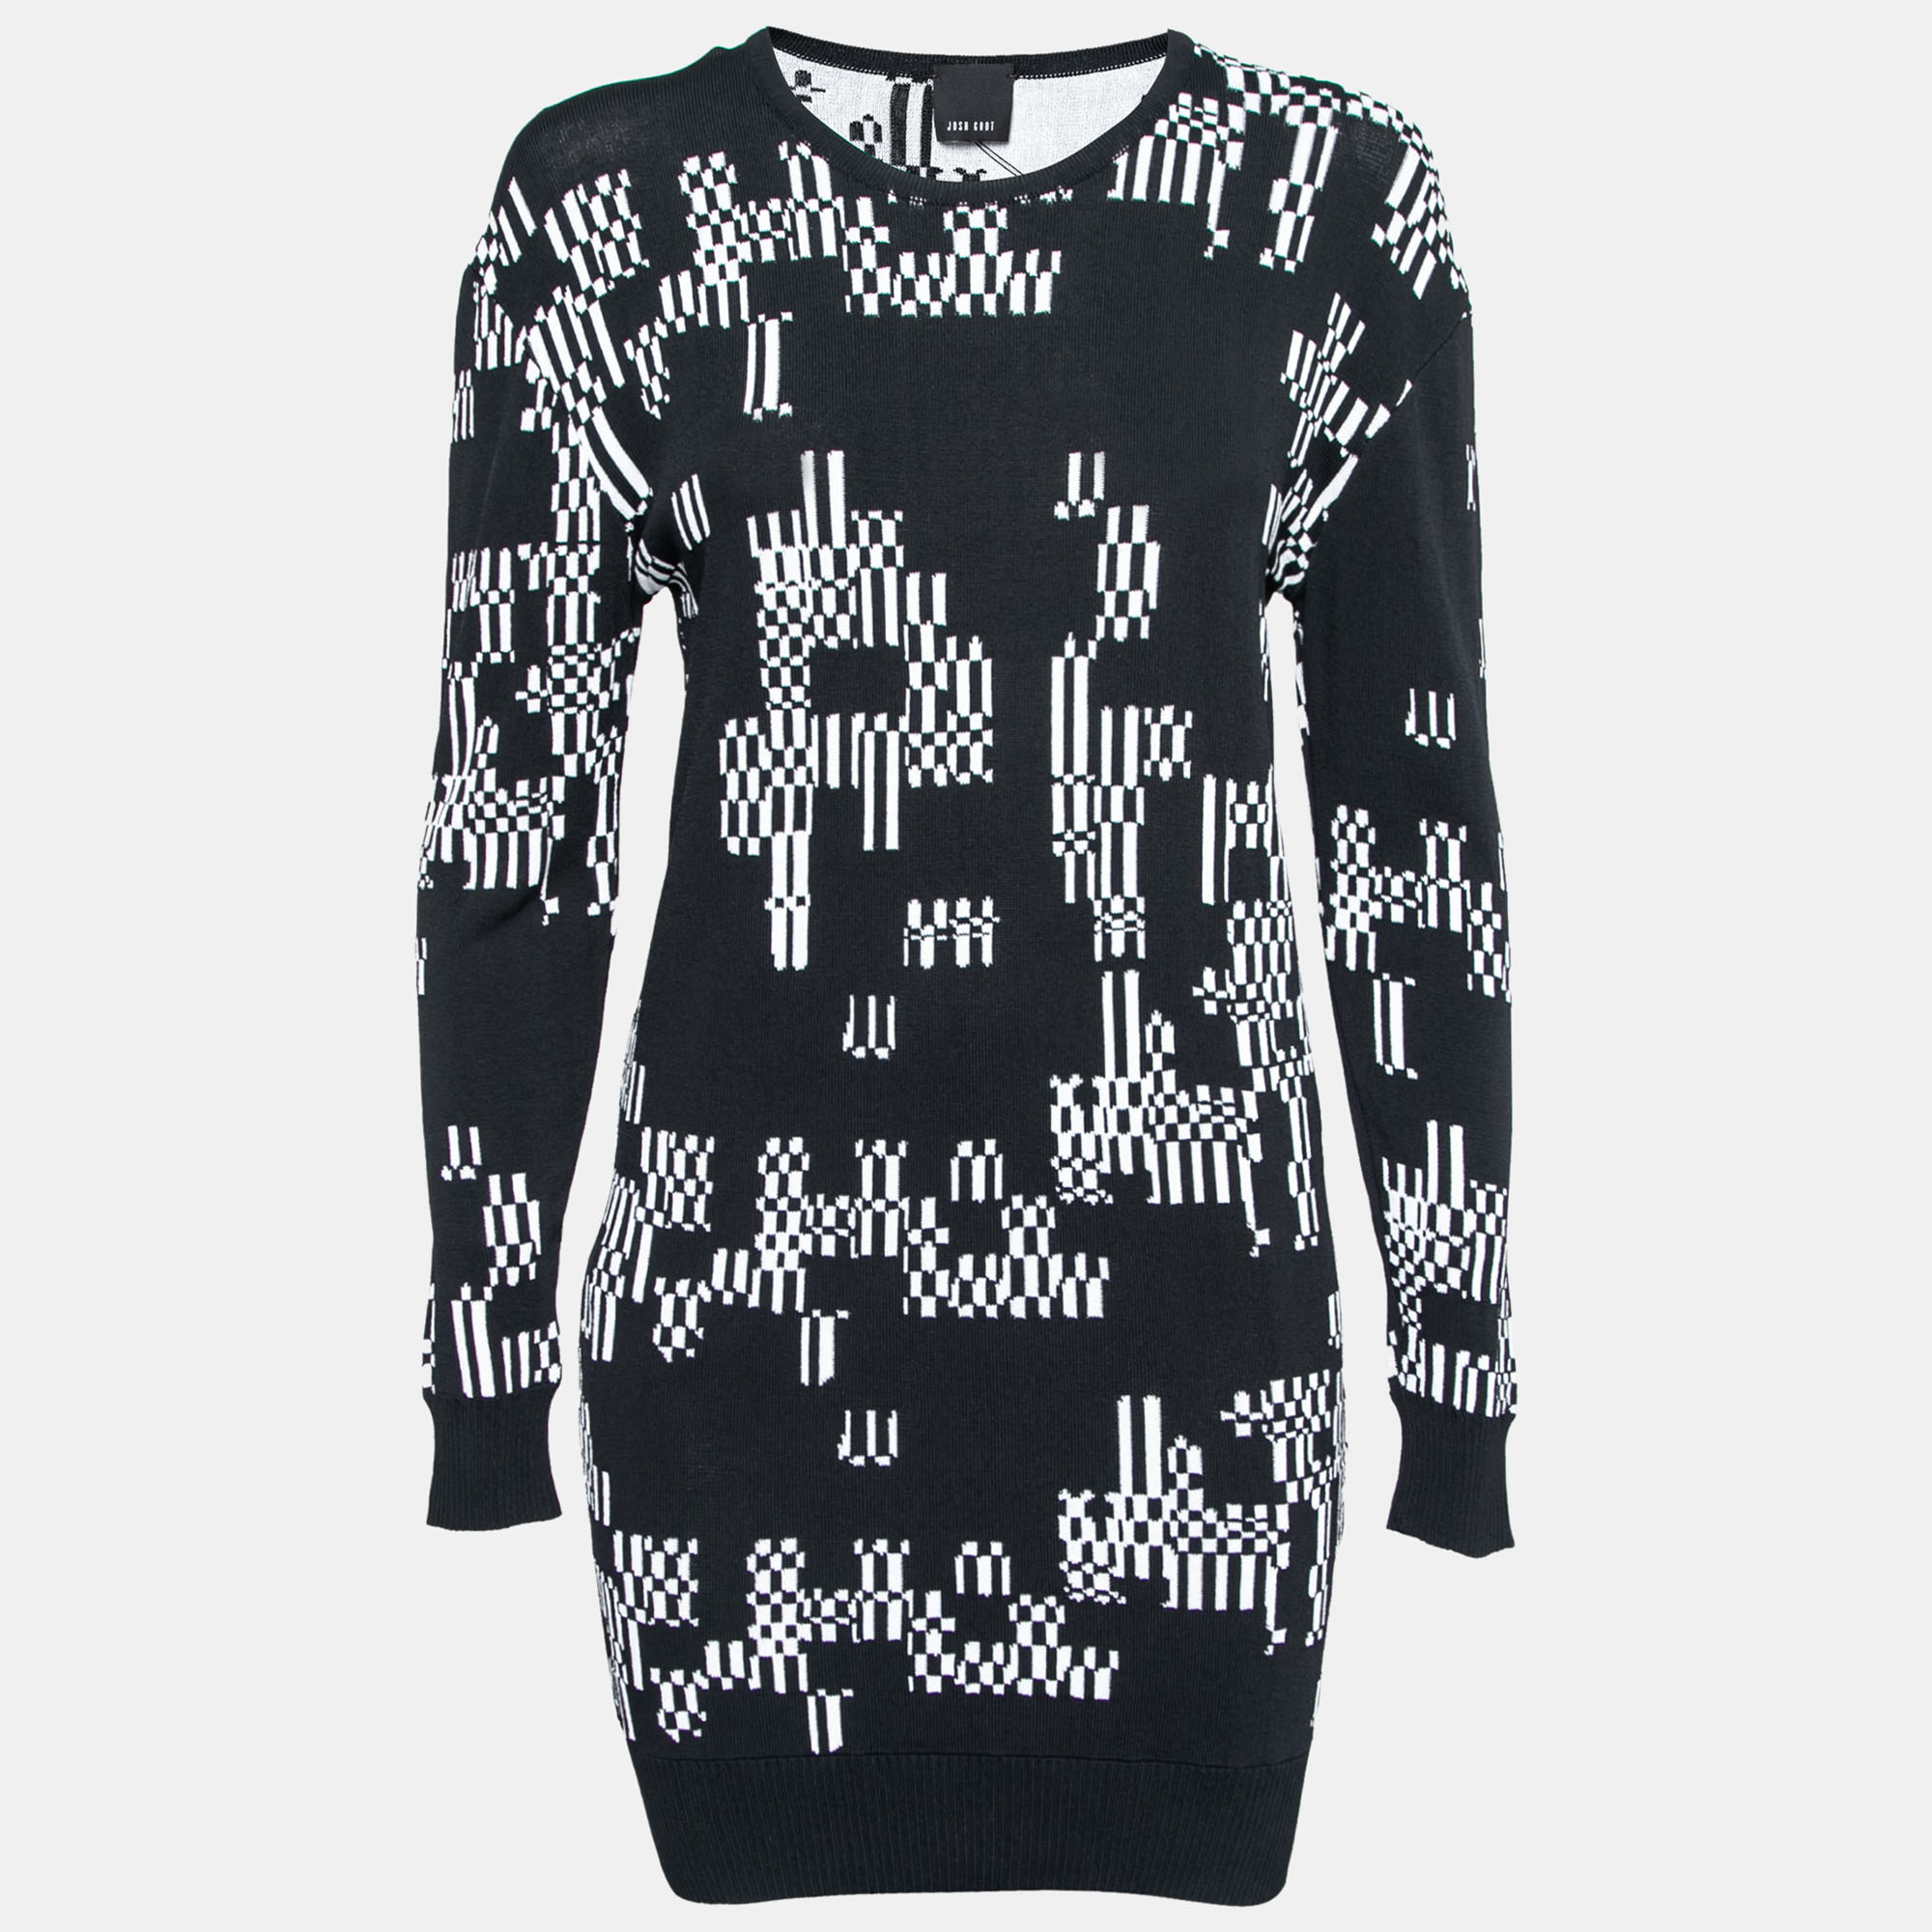 Josh Goot Monochrome Pixel Intarsia Knit Glitch Sweater Dress XS